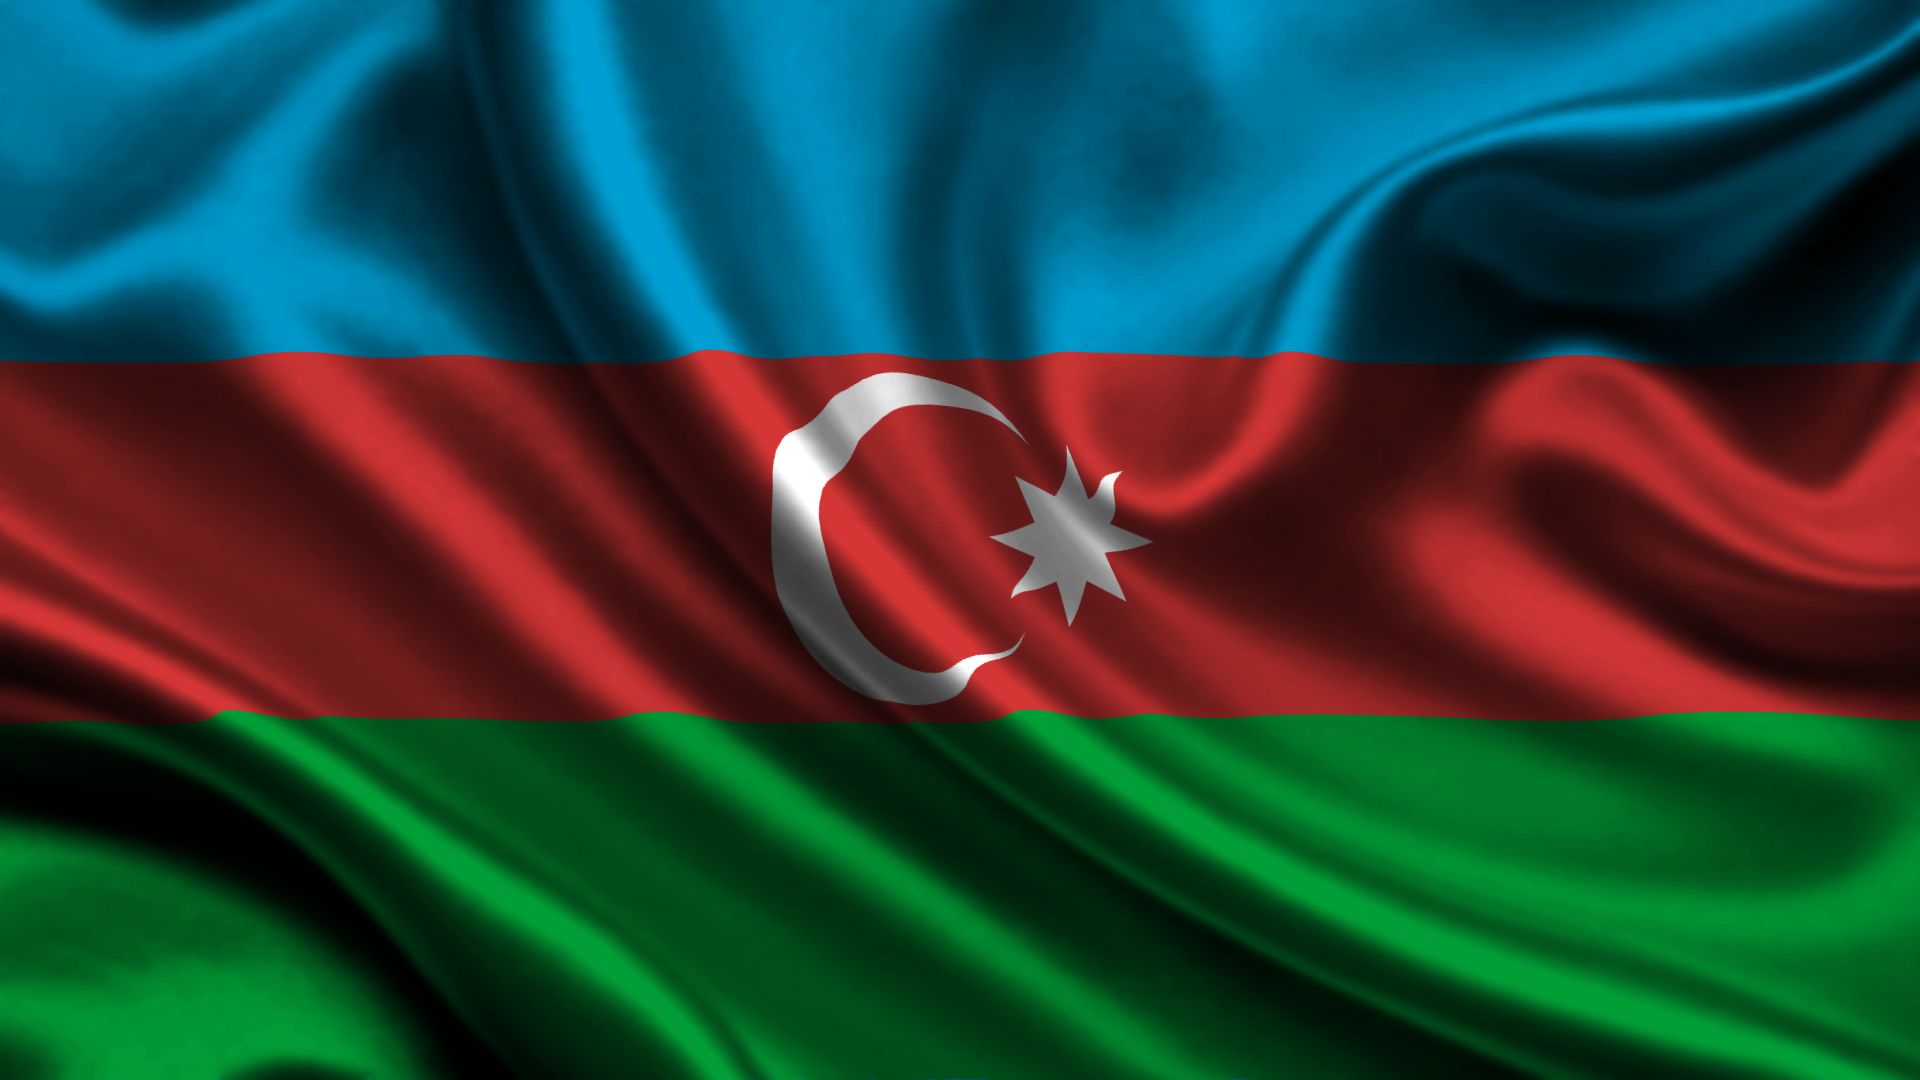 Скачать обои Флаг Азербайджана на телефон бесплатно